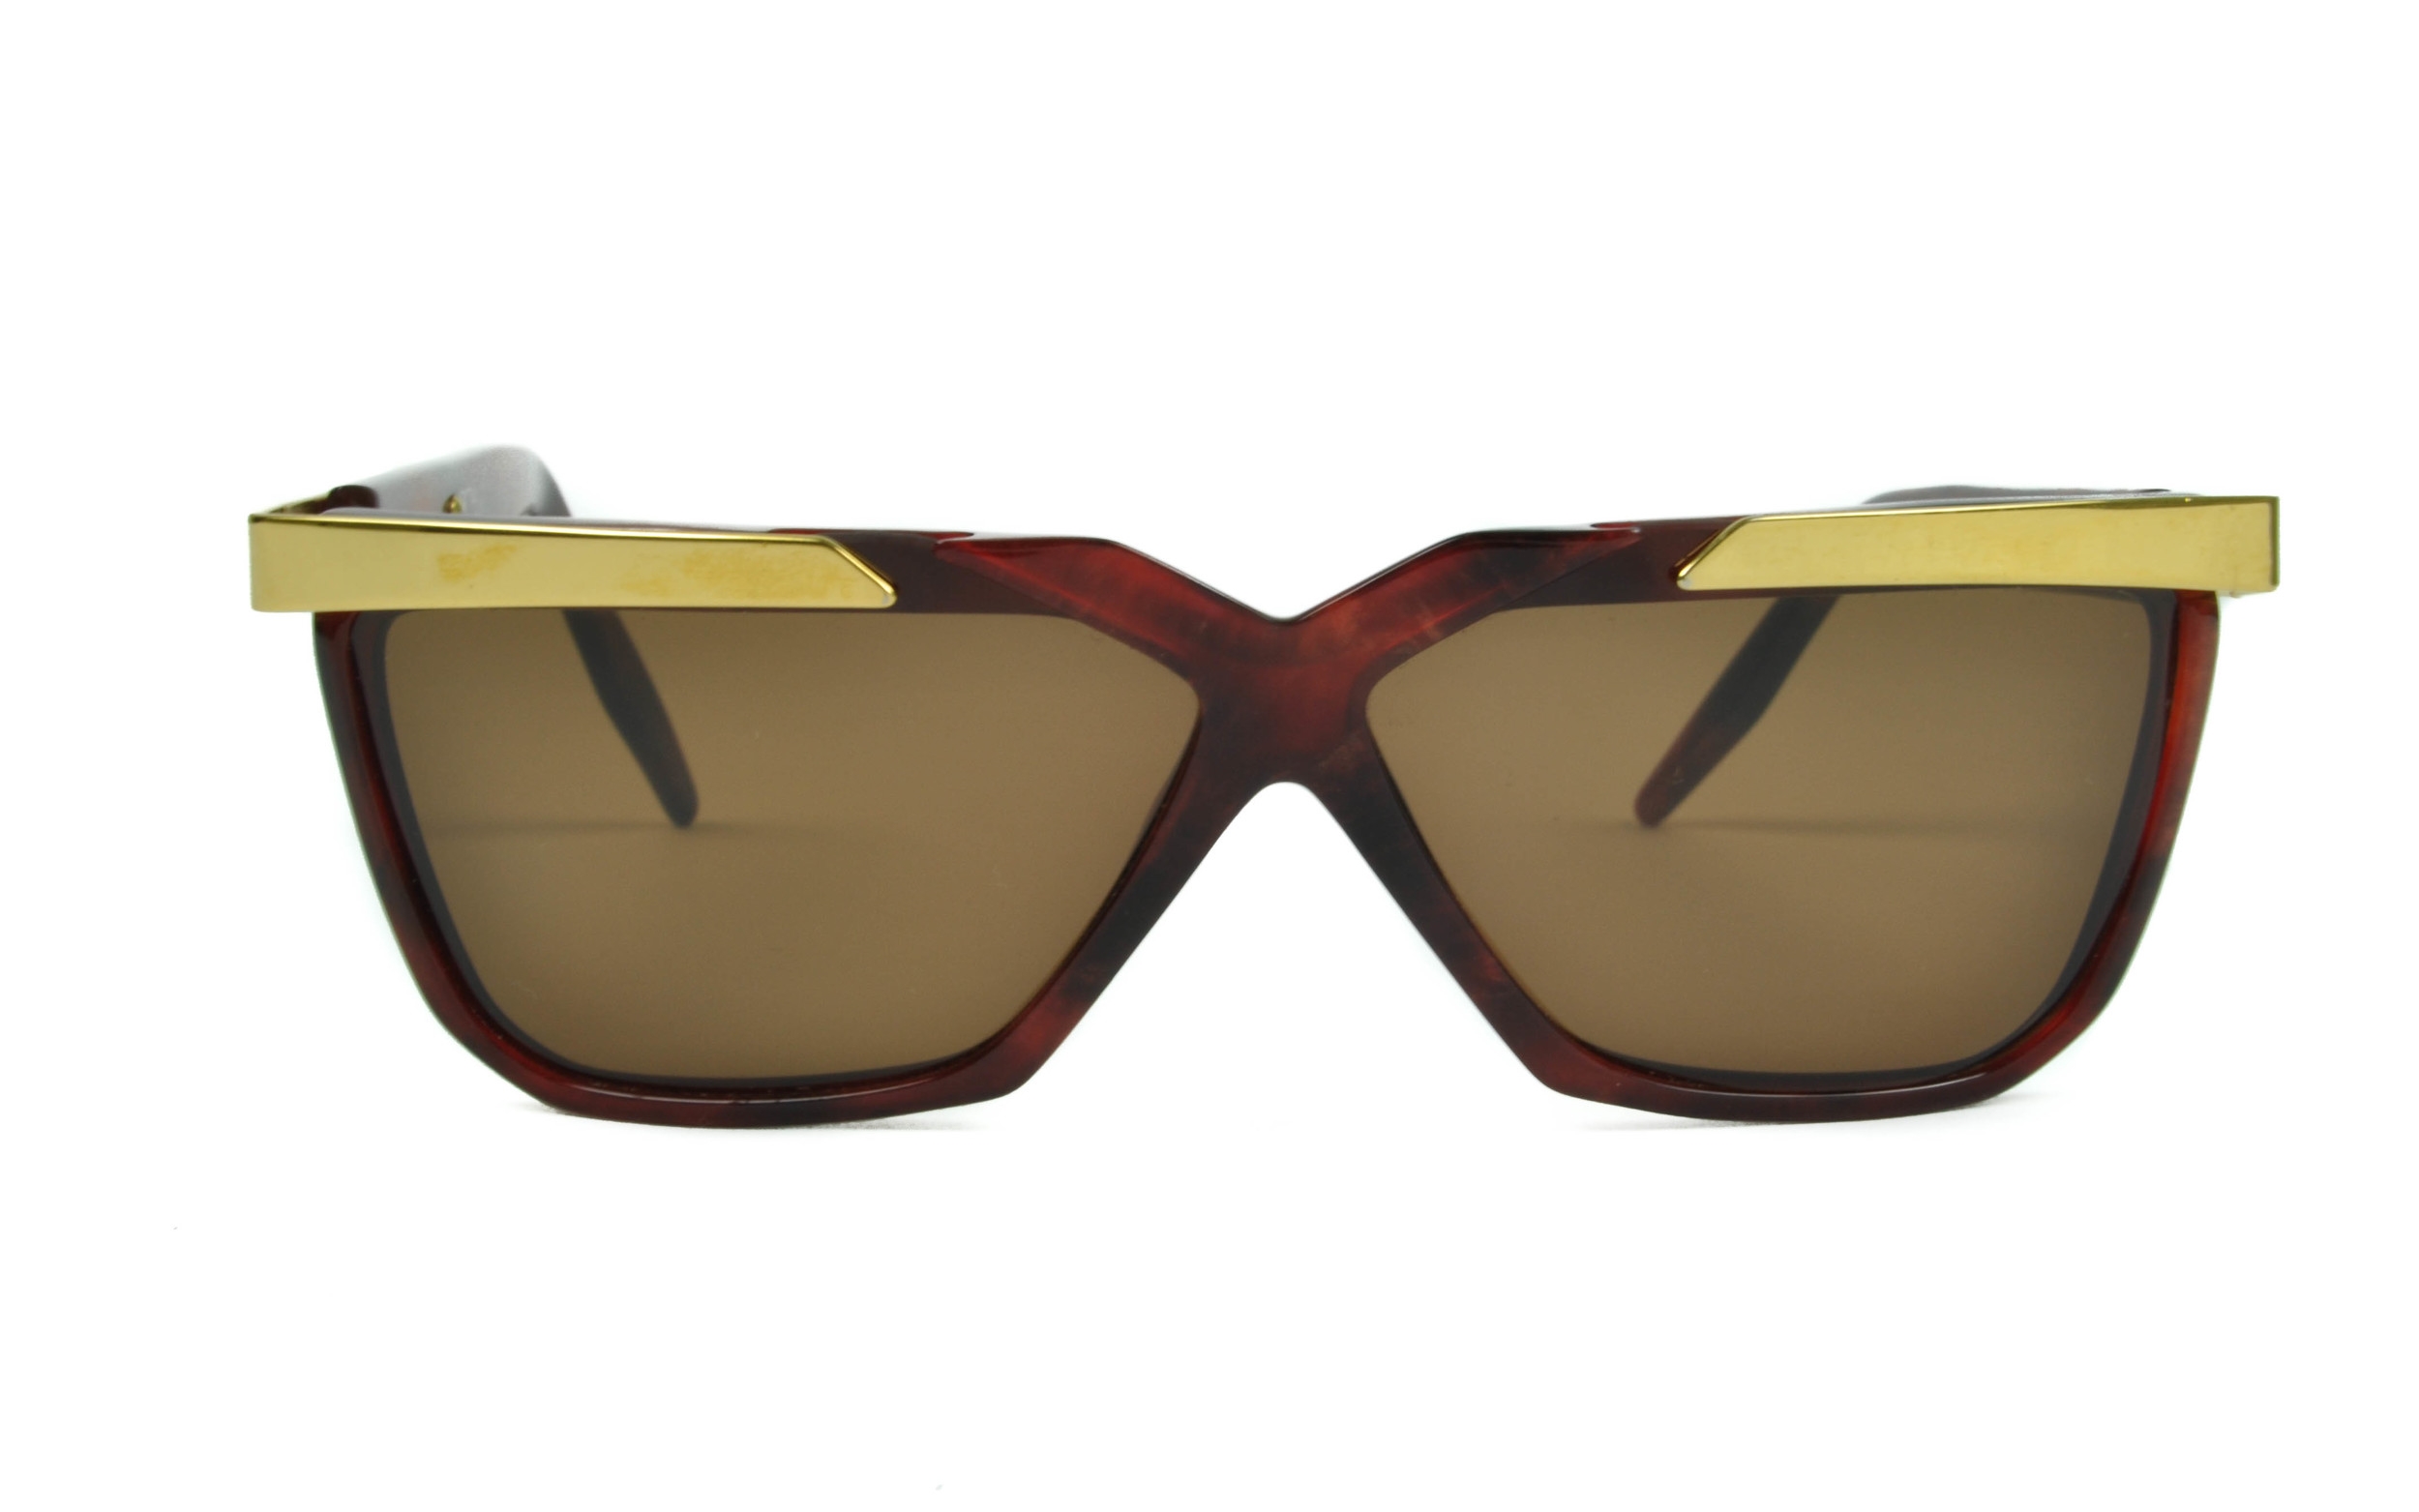 Roberto Capucci RC 302 Rectangular Italian Designer Plastic Metal Sunglasses NOS 